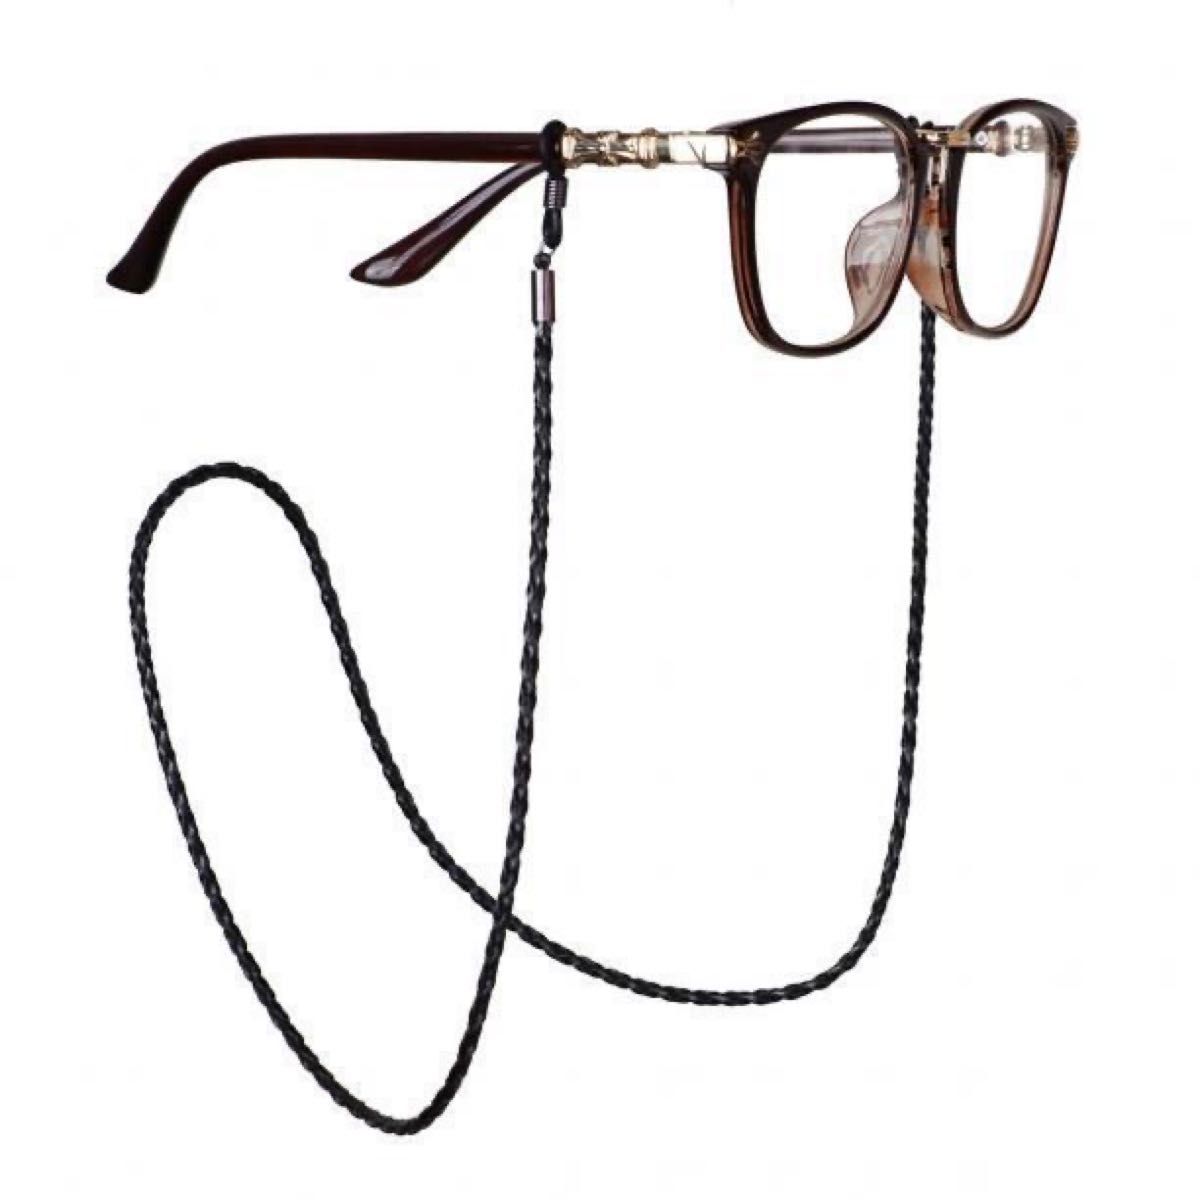 メガネストラップ メガネチェーン レザー 眼鏡ストラップ グラスコード バンドチェーン ずれ落ち防止 軽量 ブラック 2本セット